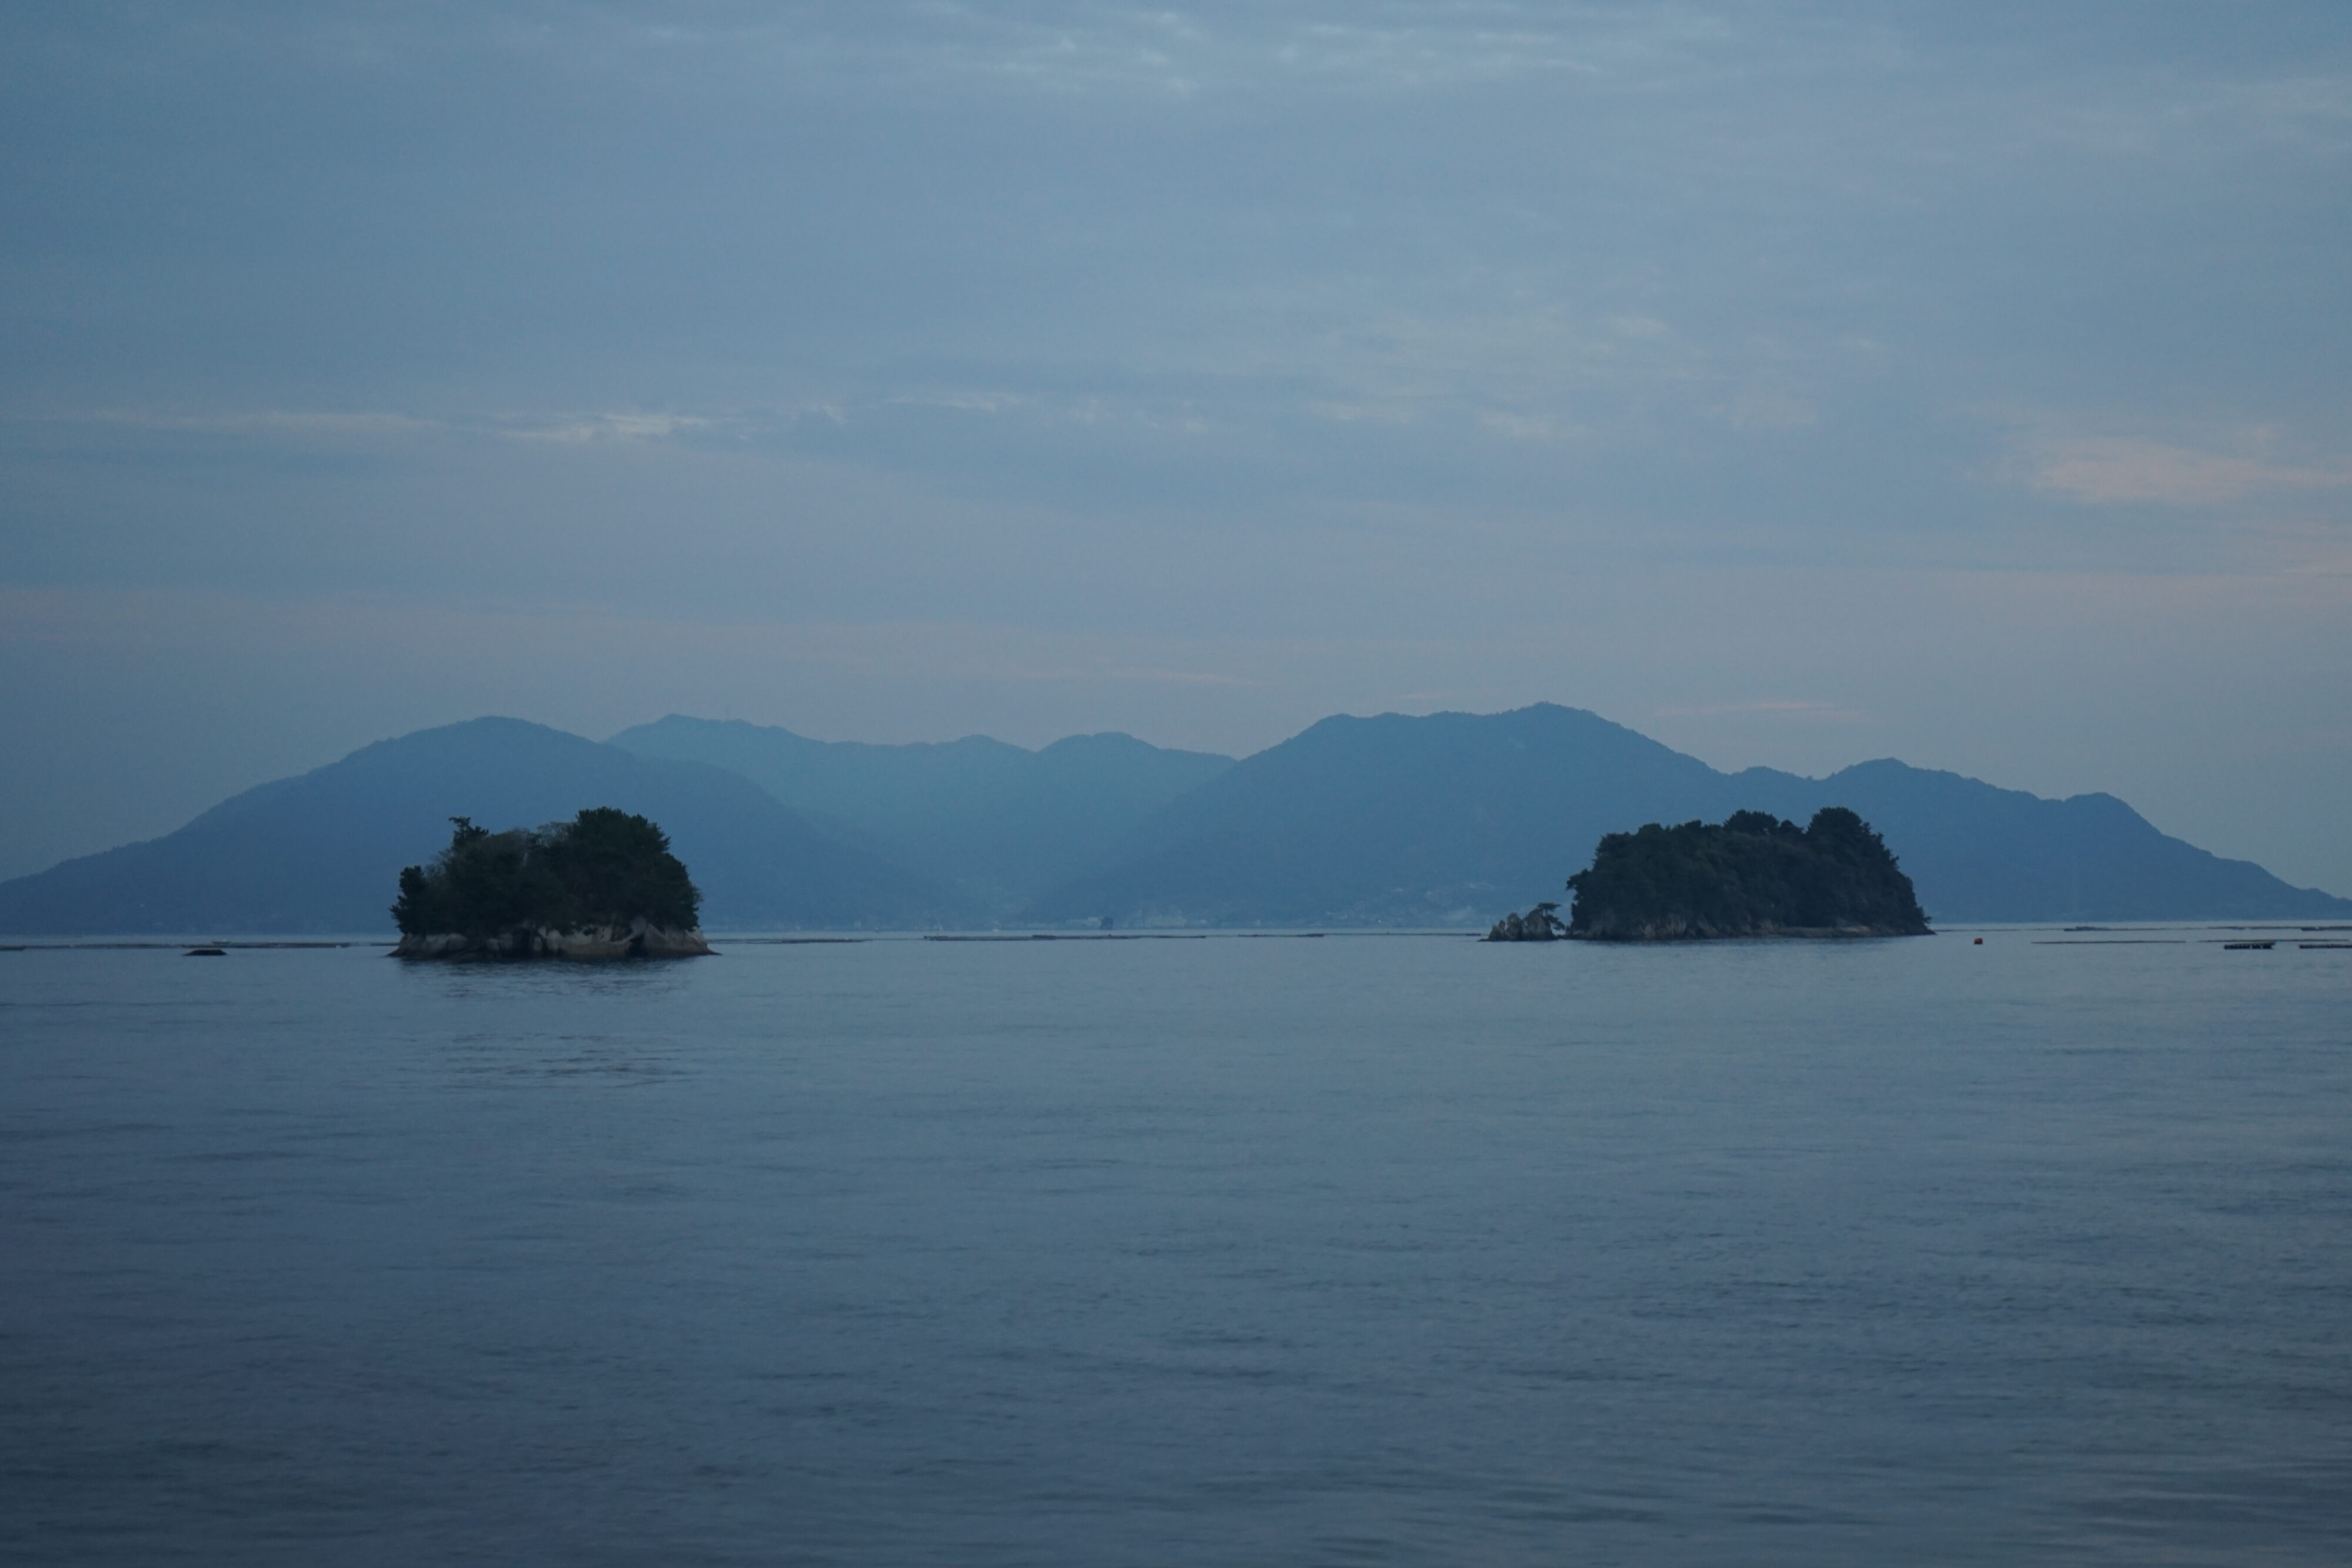 Blick auf das Meer mit zwei kleinen Inseln und im Hintergrund sind weitere größere Inseln mit Hügeln zu erkennen.